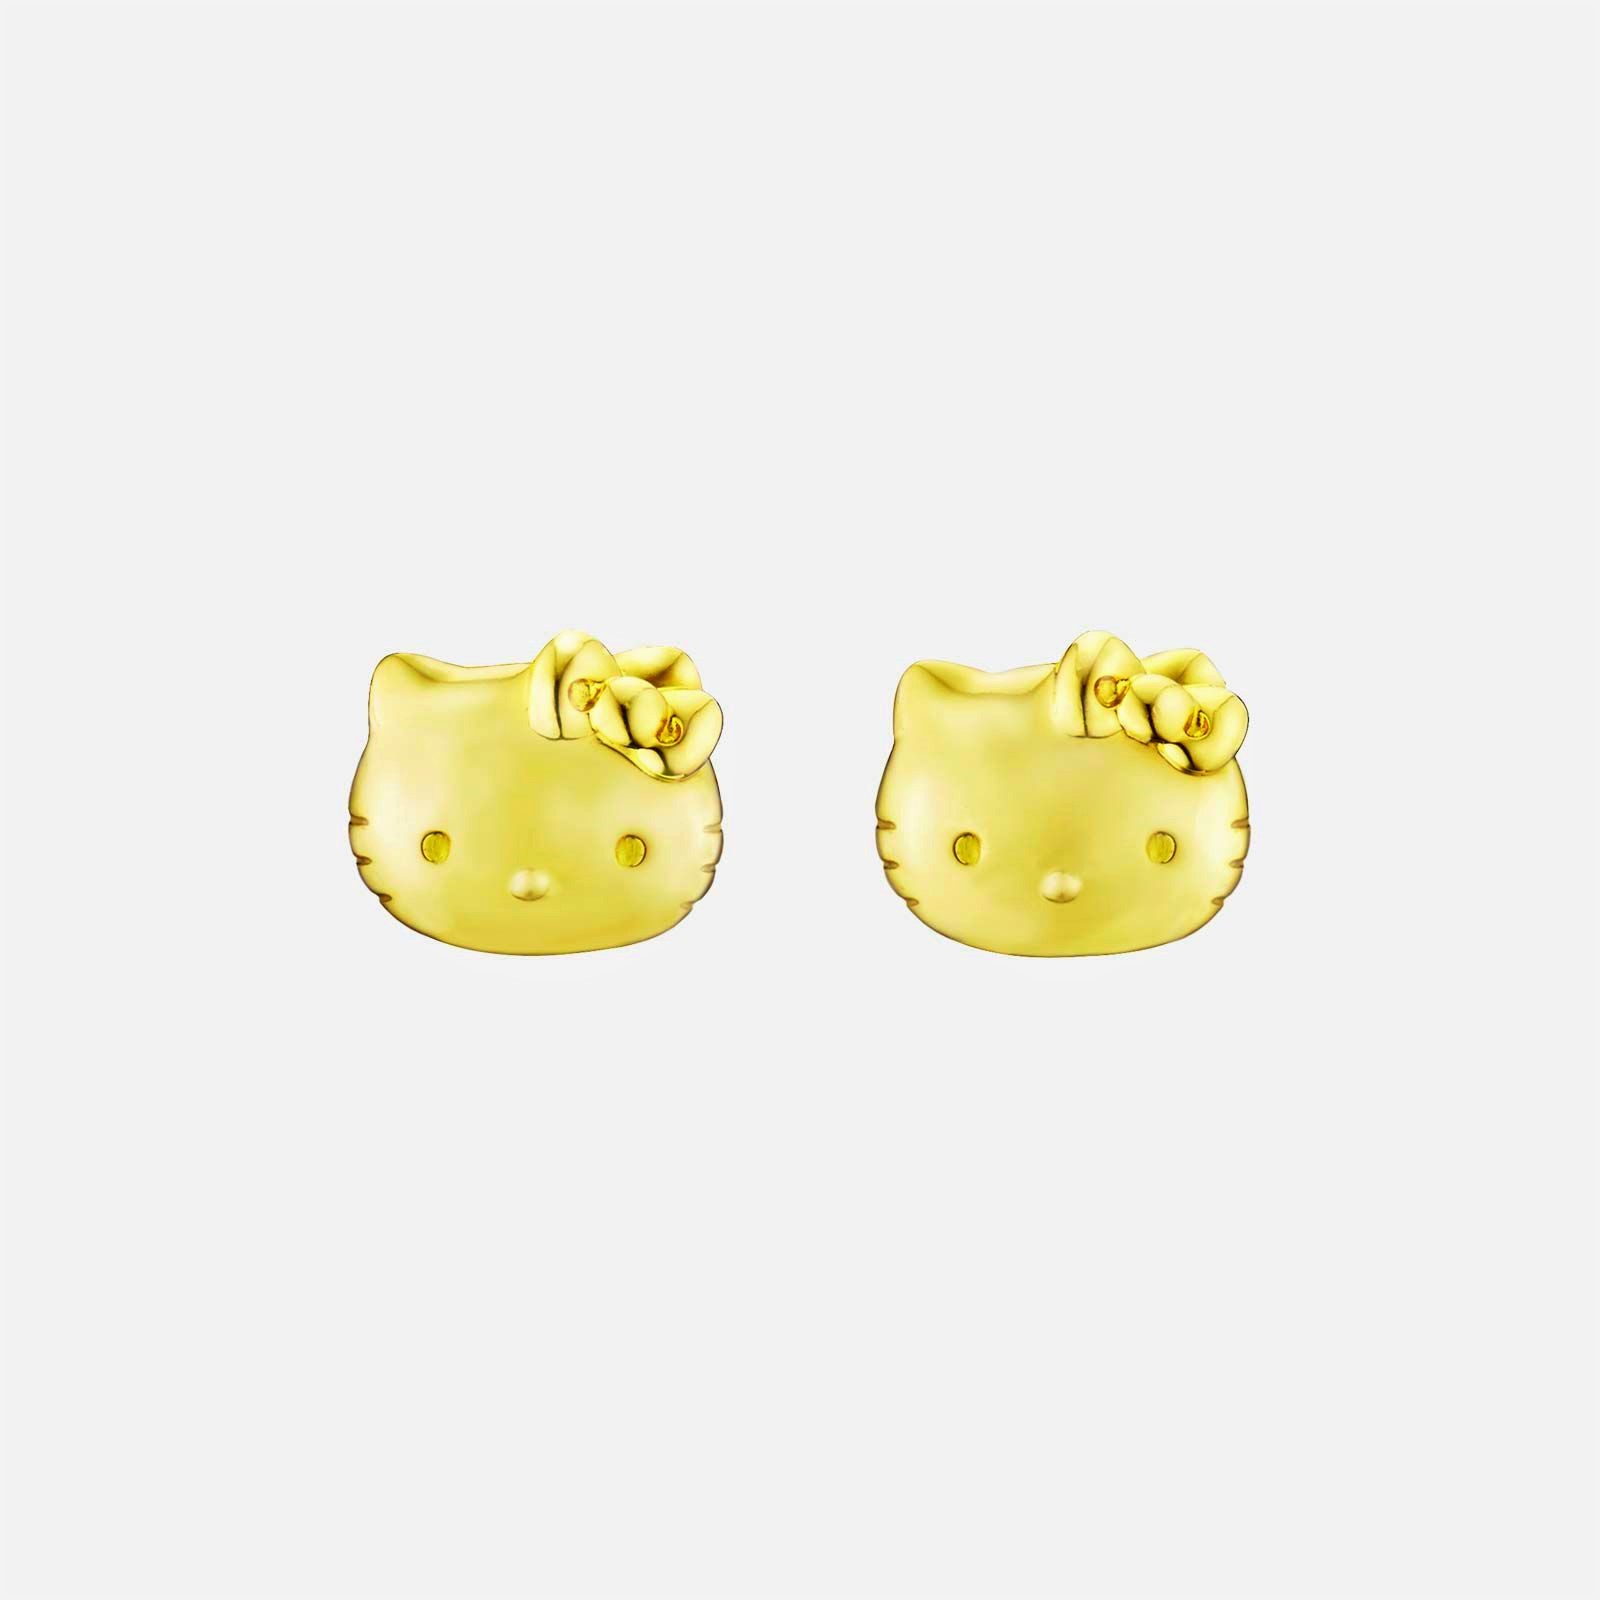 Poh Heng Hello Kitty Earrings in 22K Yellow Gold